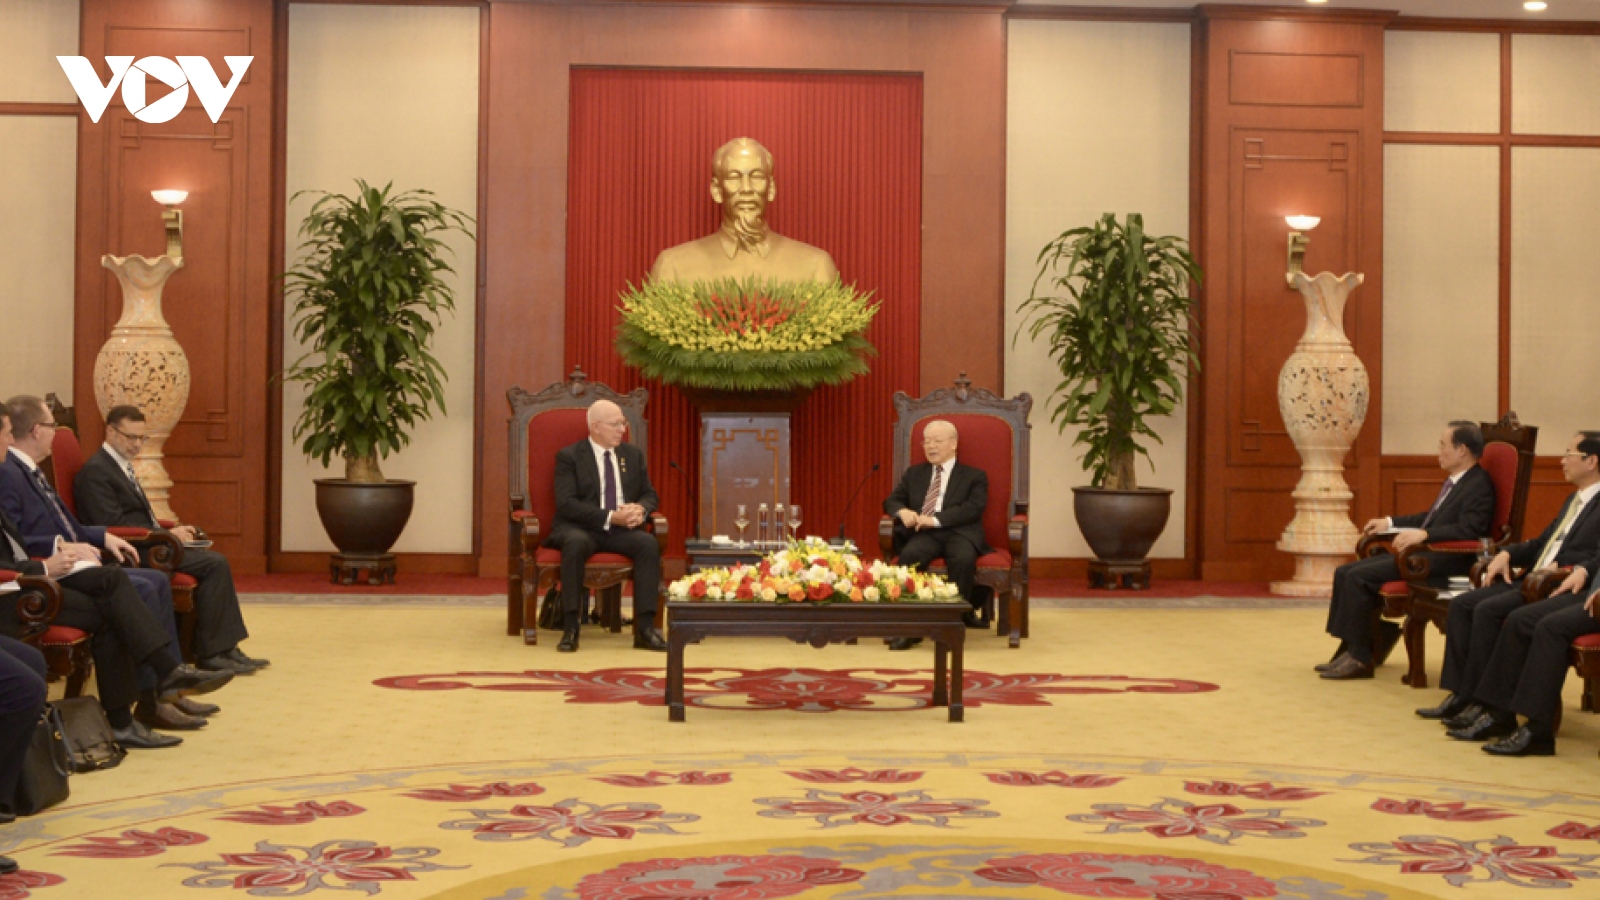 Tổng Bí thư tiếp Toàn quyền Australia thăm cấp Nhà nước tới Việt Nam